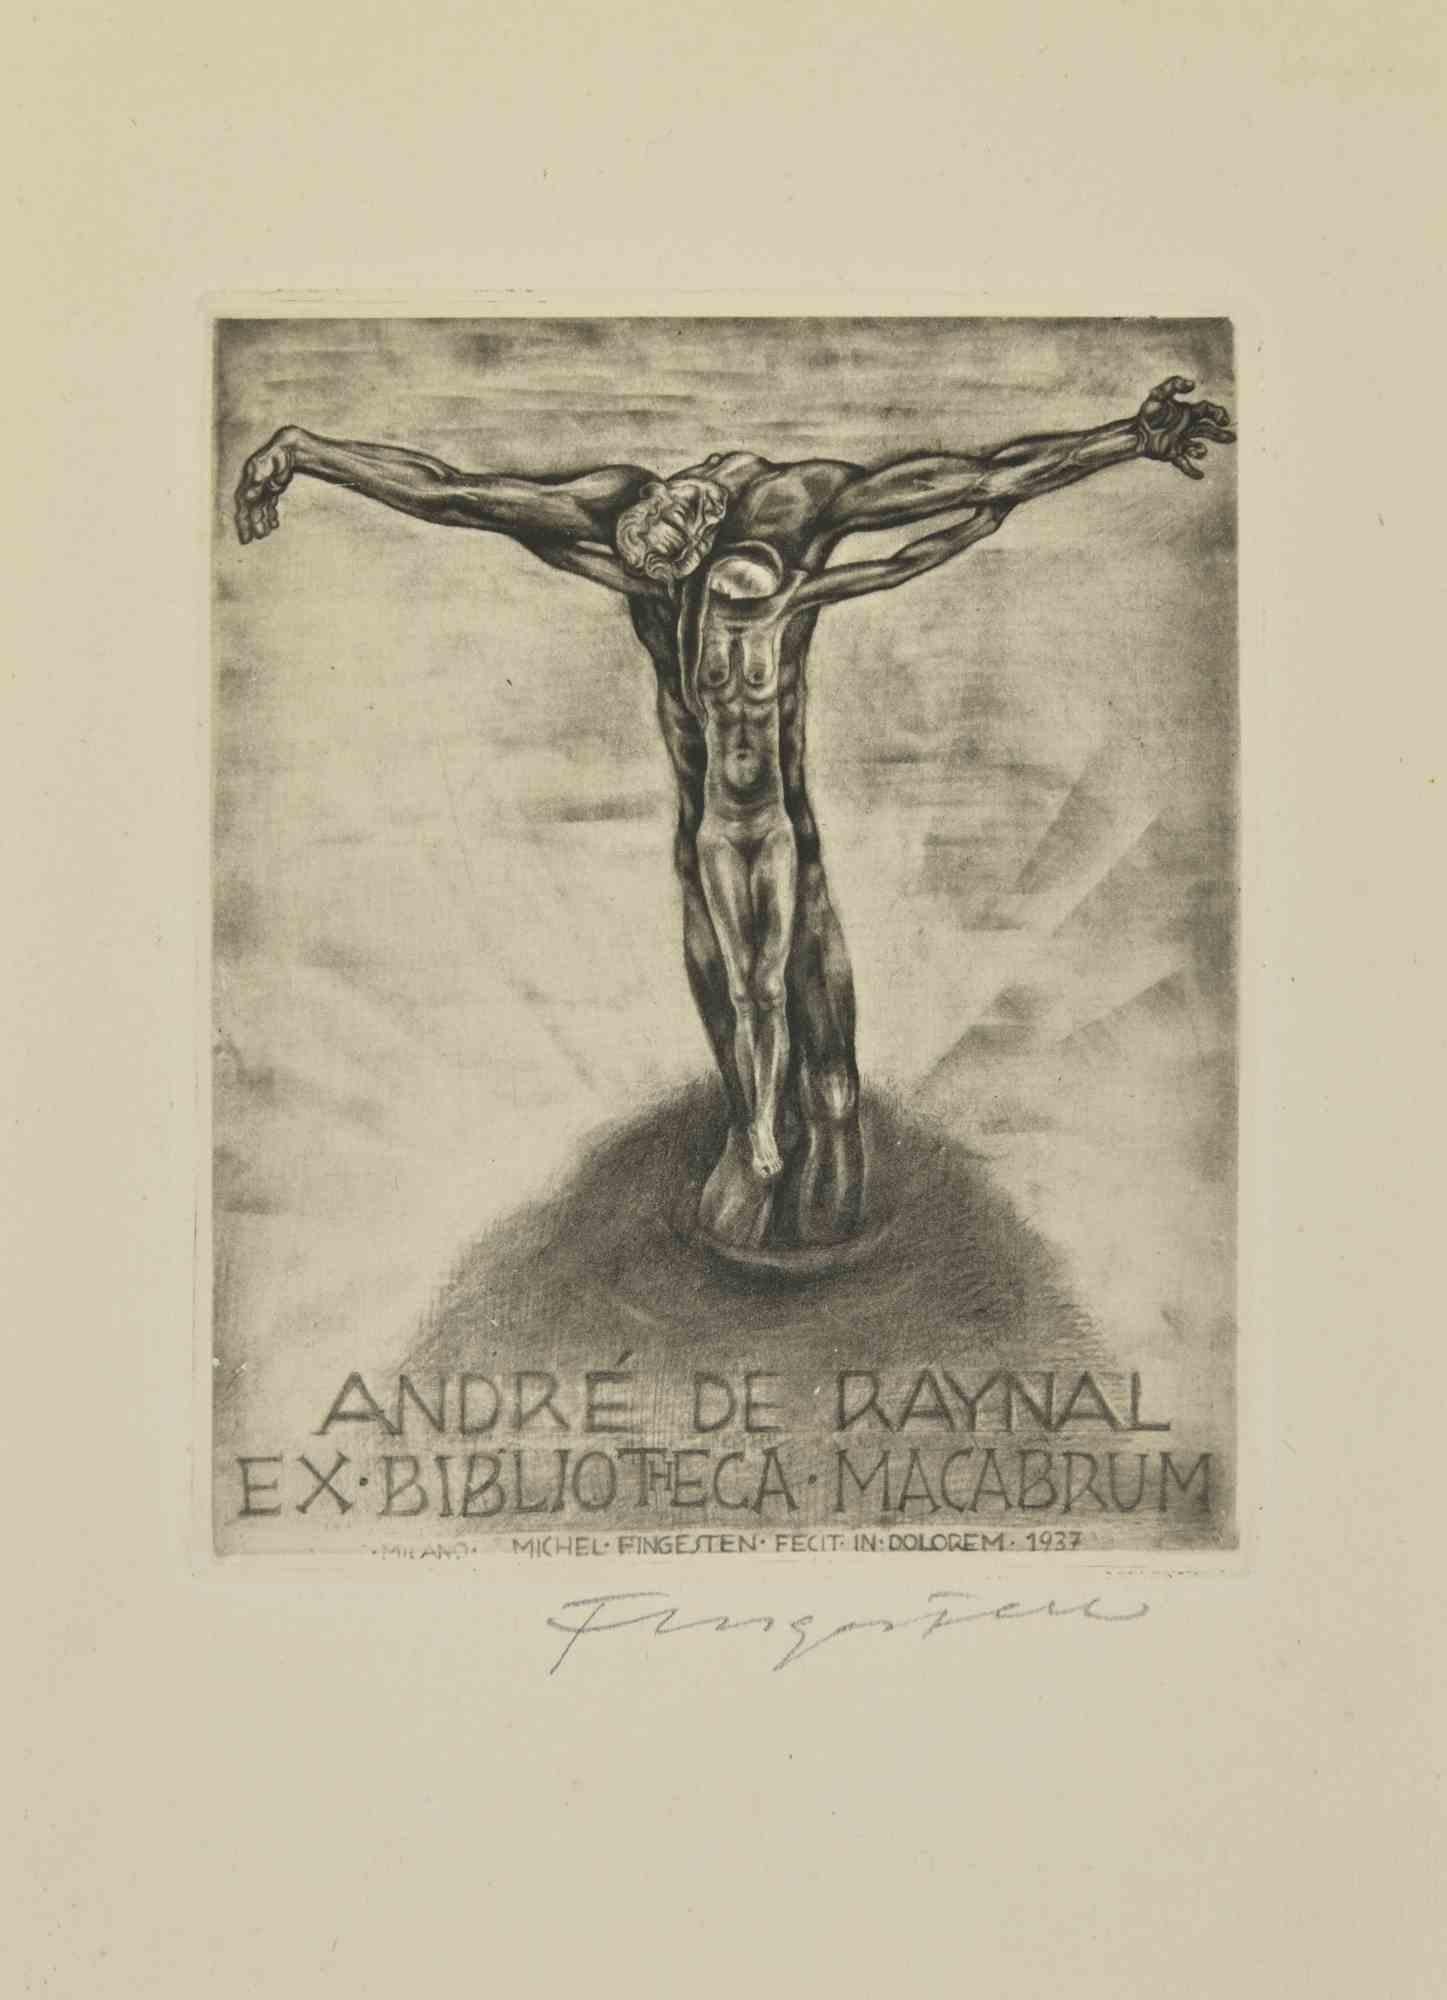 Ex Libris-André de Raynal-Ex Biblioteca Macabru- Radierung von M. Fingesten - 1937